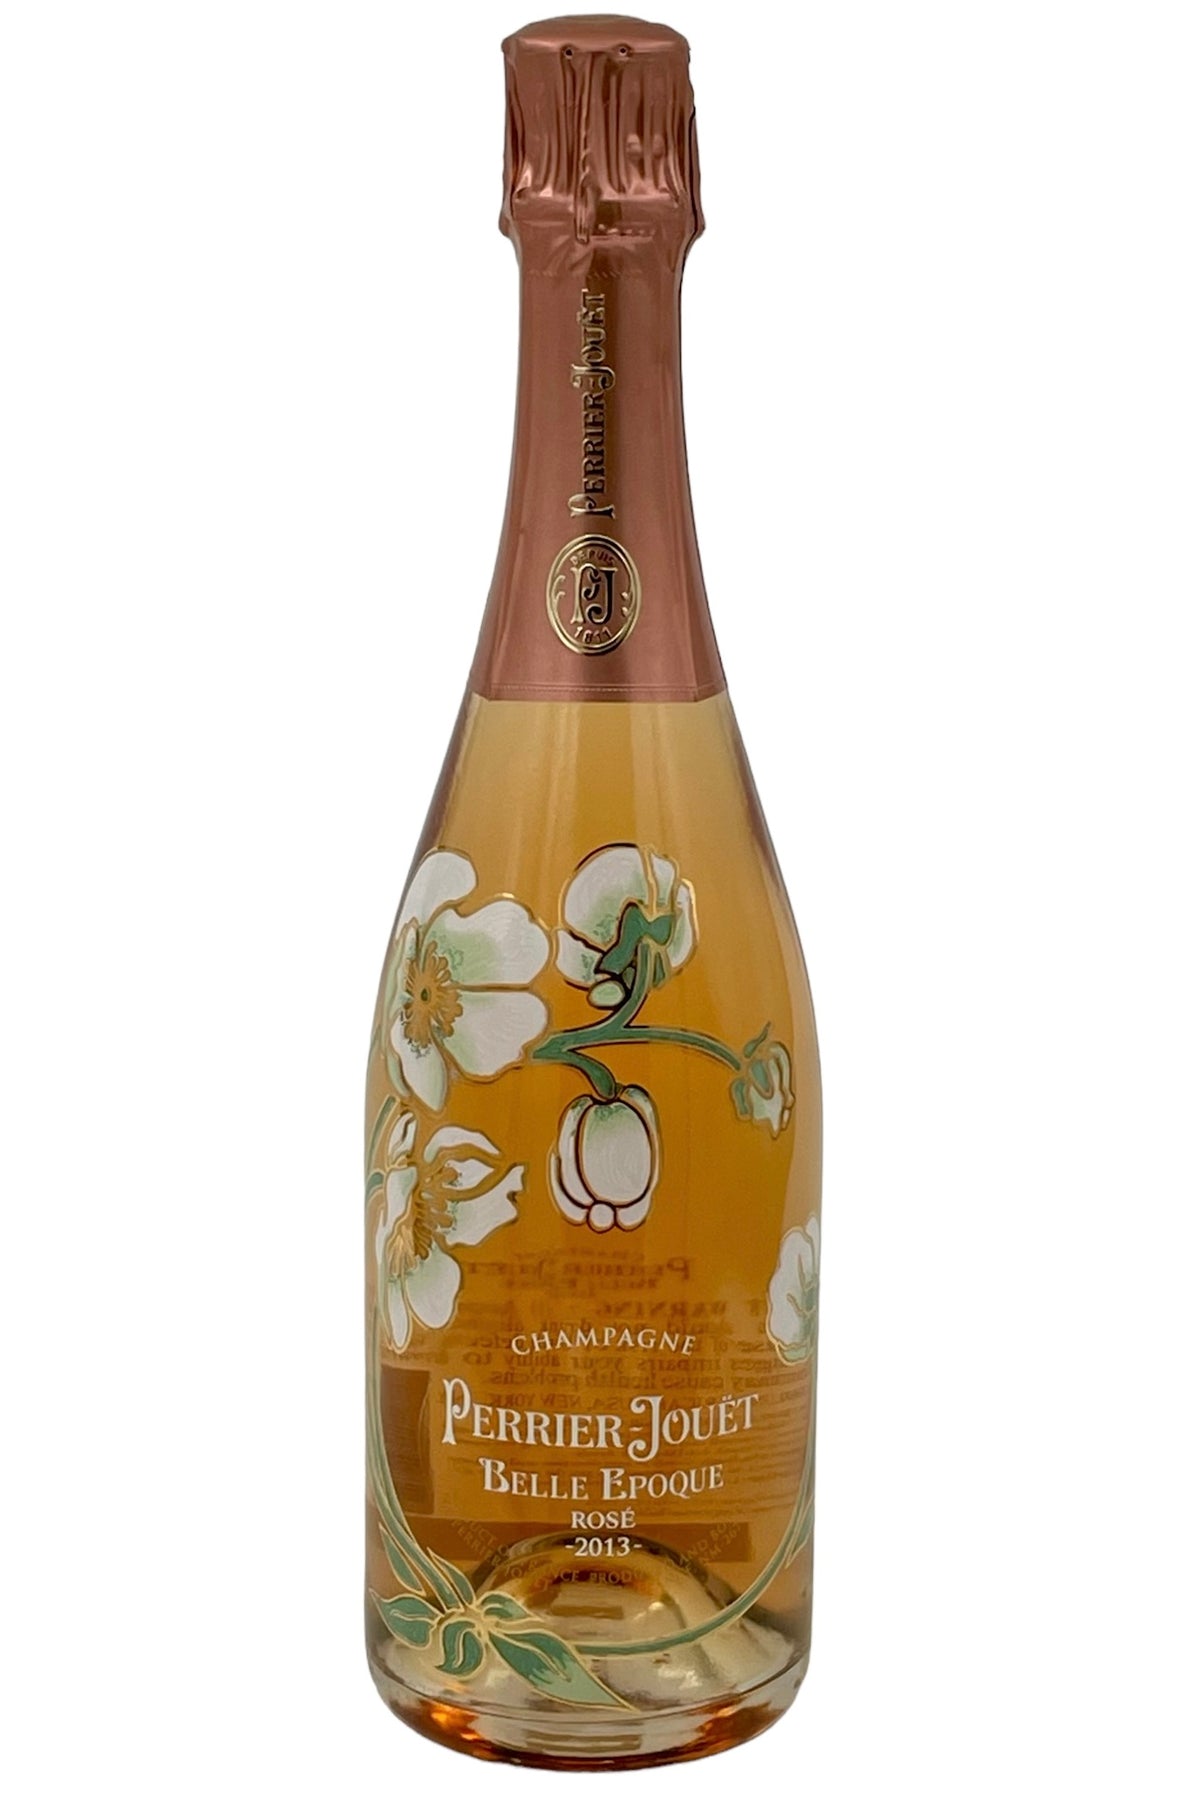 Perrier Jouet 2013 Brut Fleur de Champagne Rose Cuvee Belle Epoque